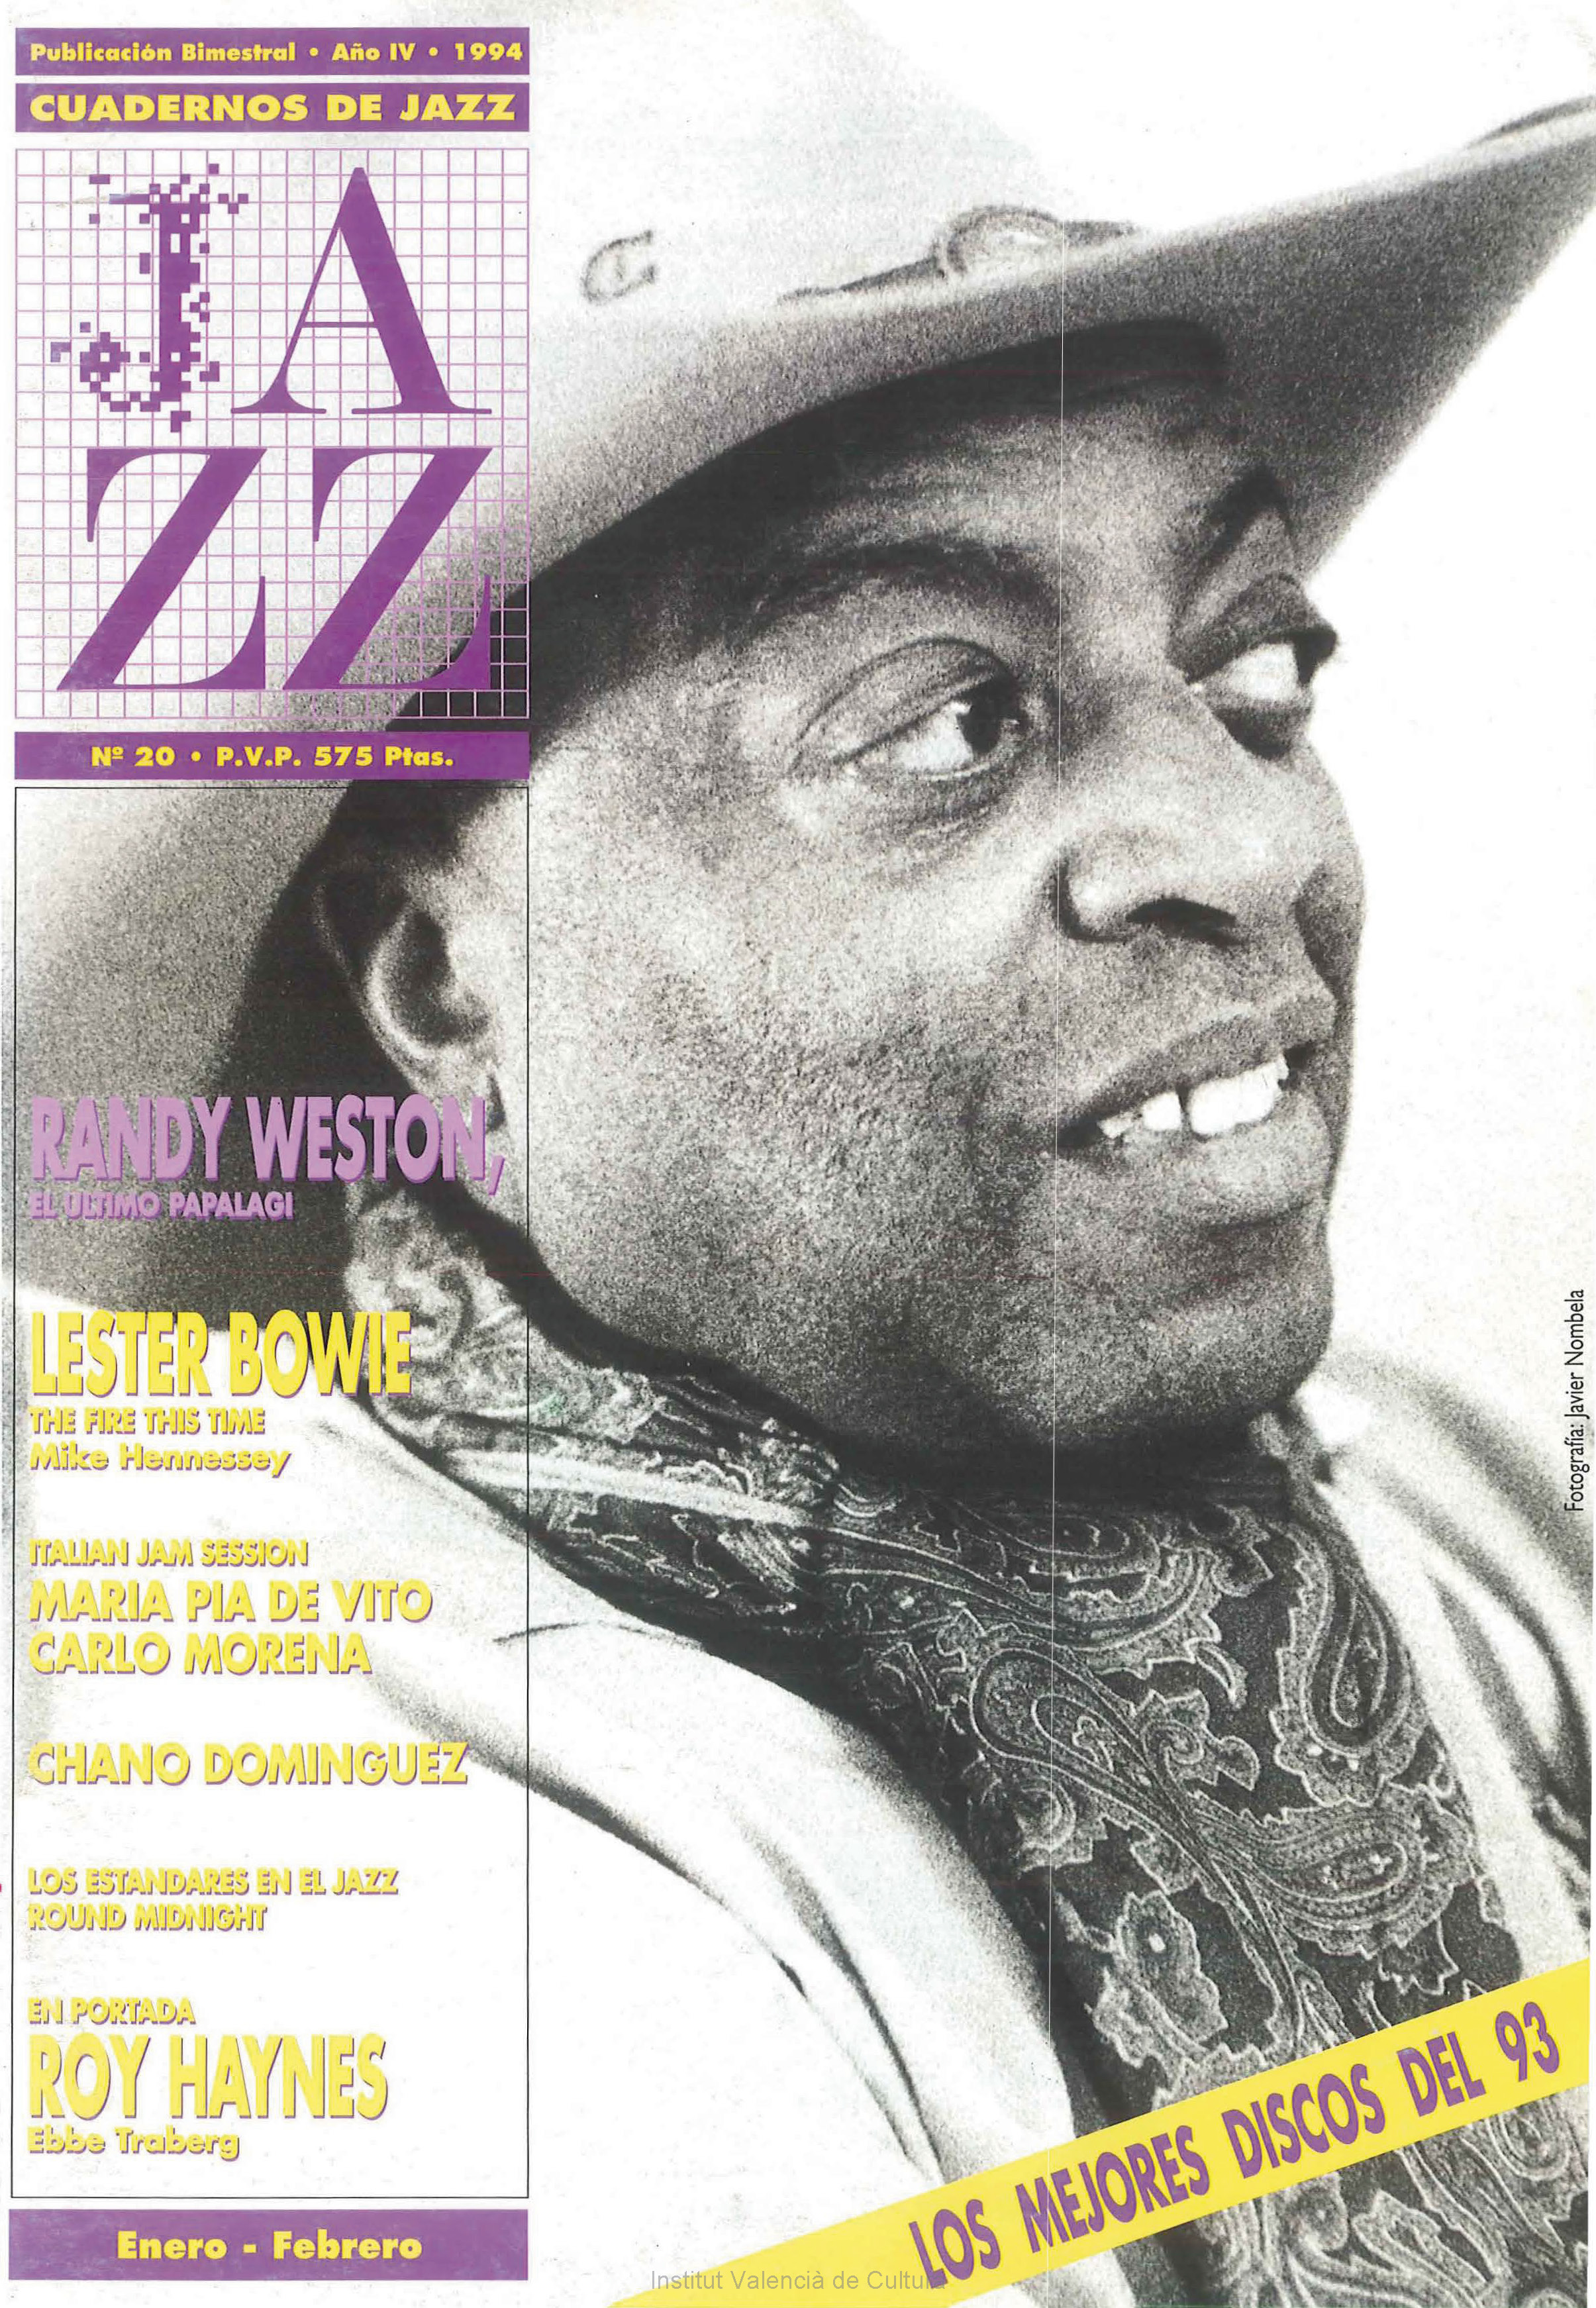 Cubierta del número 20 de la revista Cuadernos de Jazz